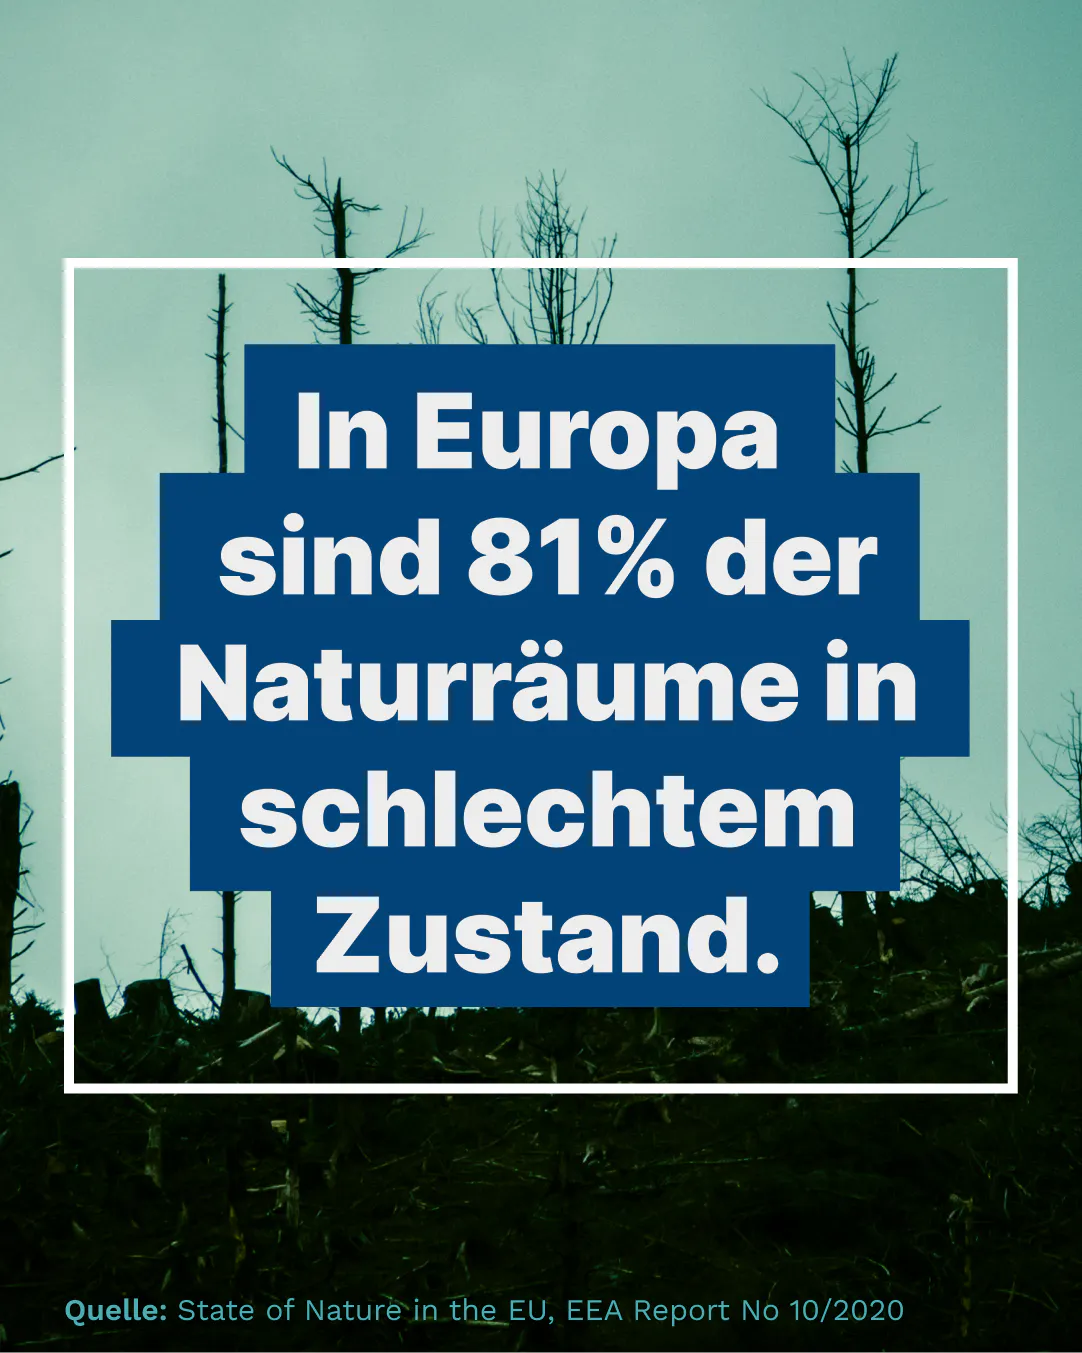 In Europa sind 81% der Naturräume in schlechtem Zustand.